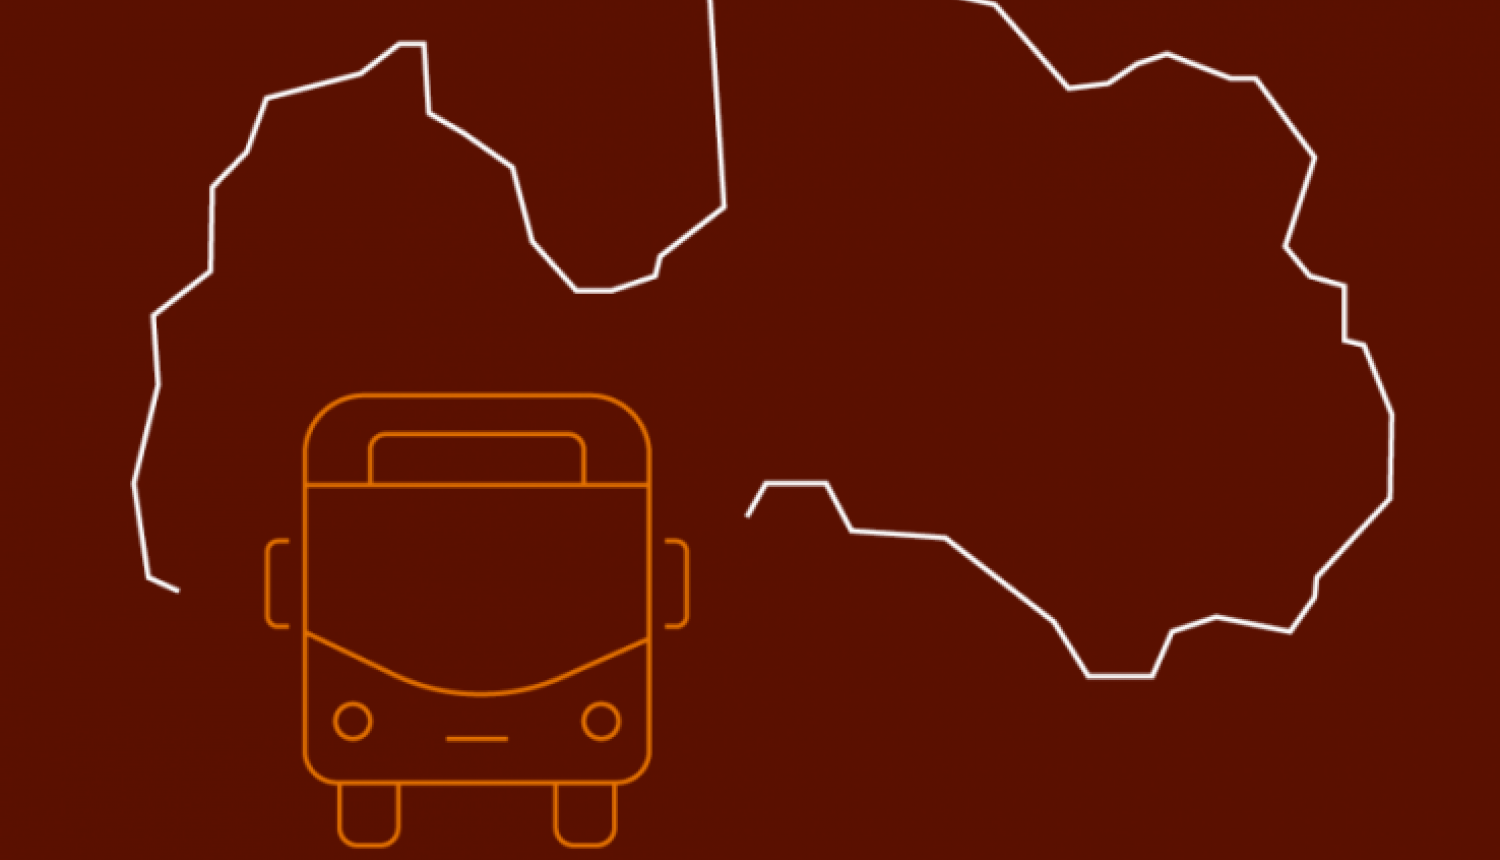 Uzmanību autobusu Rūjiena-Valka un Valka –Rūjiena pasažieriem